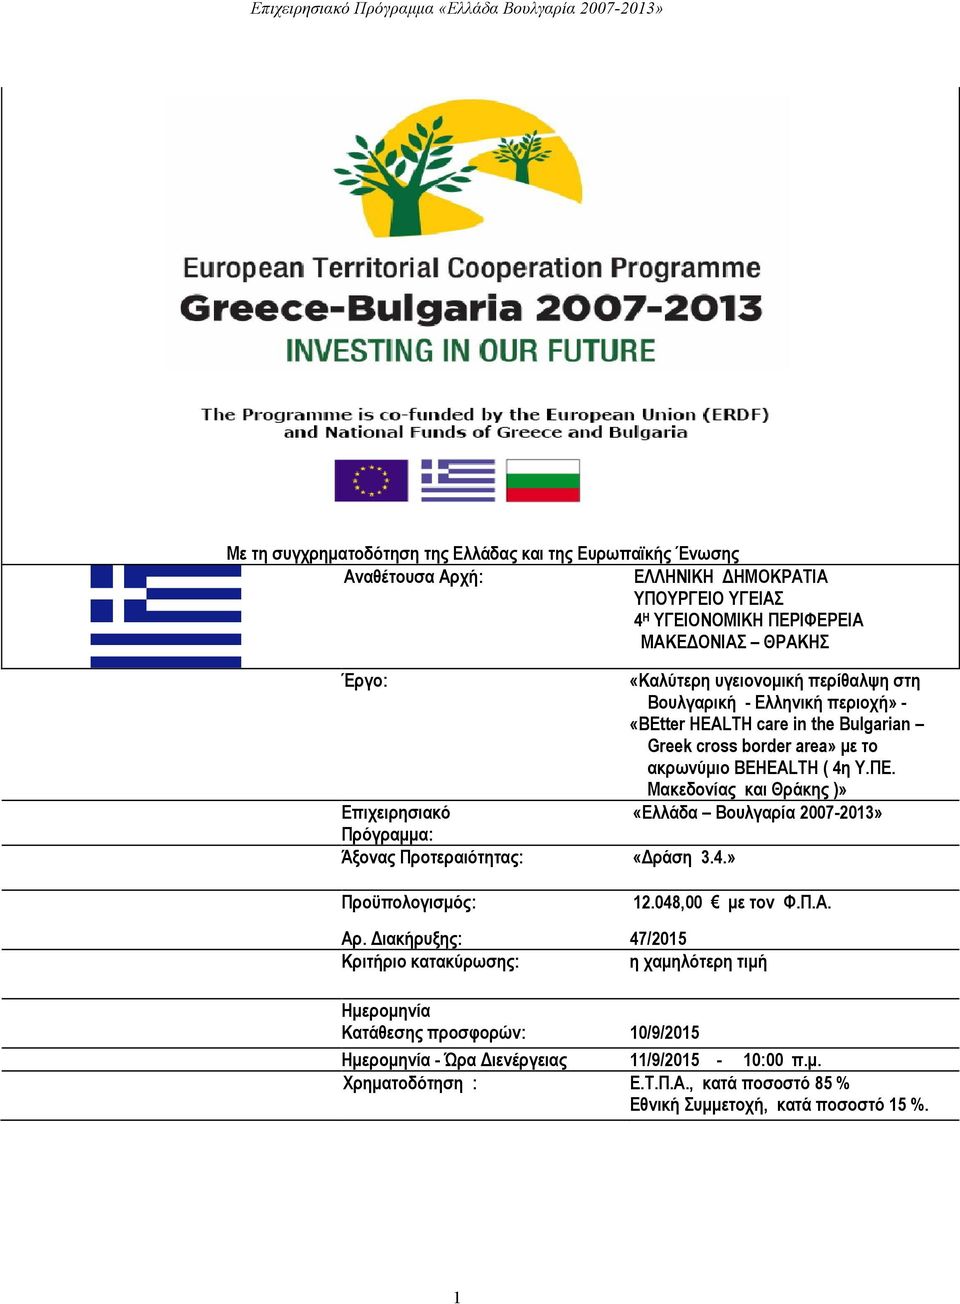 Μακεδονίας και Θράκης )» Επιχειρησιακό «Ελλάδα Βουλγαρία 2007-2013» Πρόγραμμα: Άξονας Προτεραιότητας: «Δράση 3.4.» Προϋπολογισμός: 12.048,00 με τον Φ.Π.Α. Αρ.